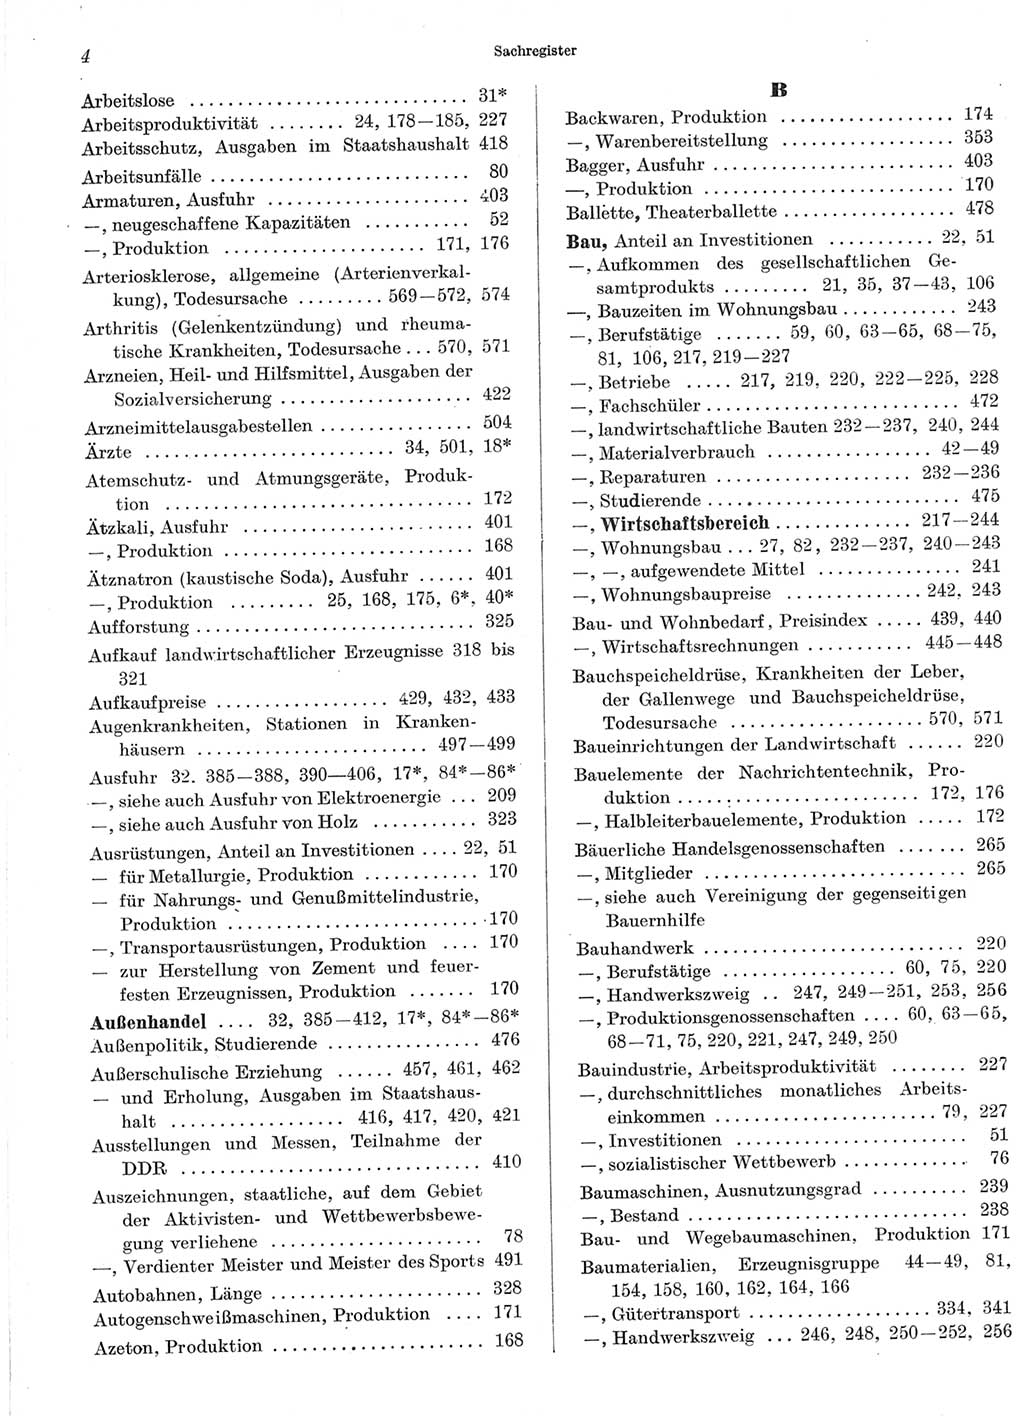 Statistisches Jahrbuch der Deutschen Demokratischen Republik (DDR) 1966, Seite 4 (Stat. Jb. DDR 1966, S. 4)